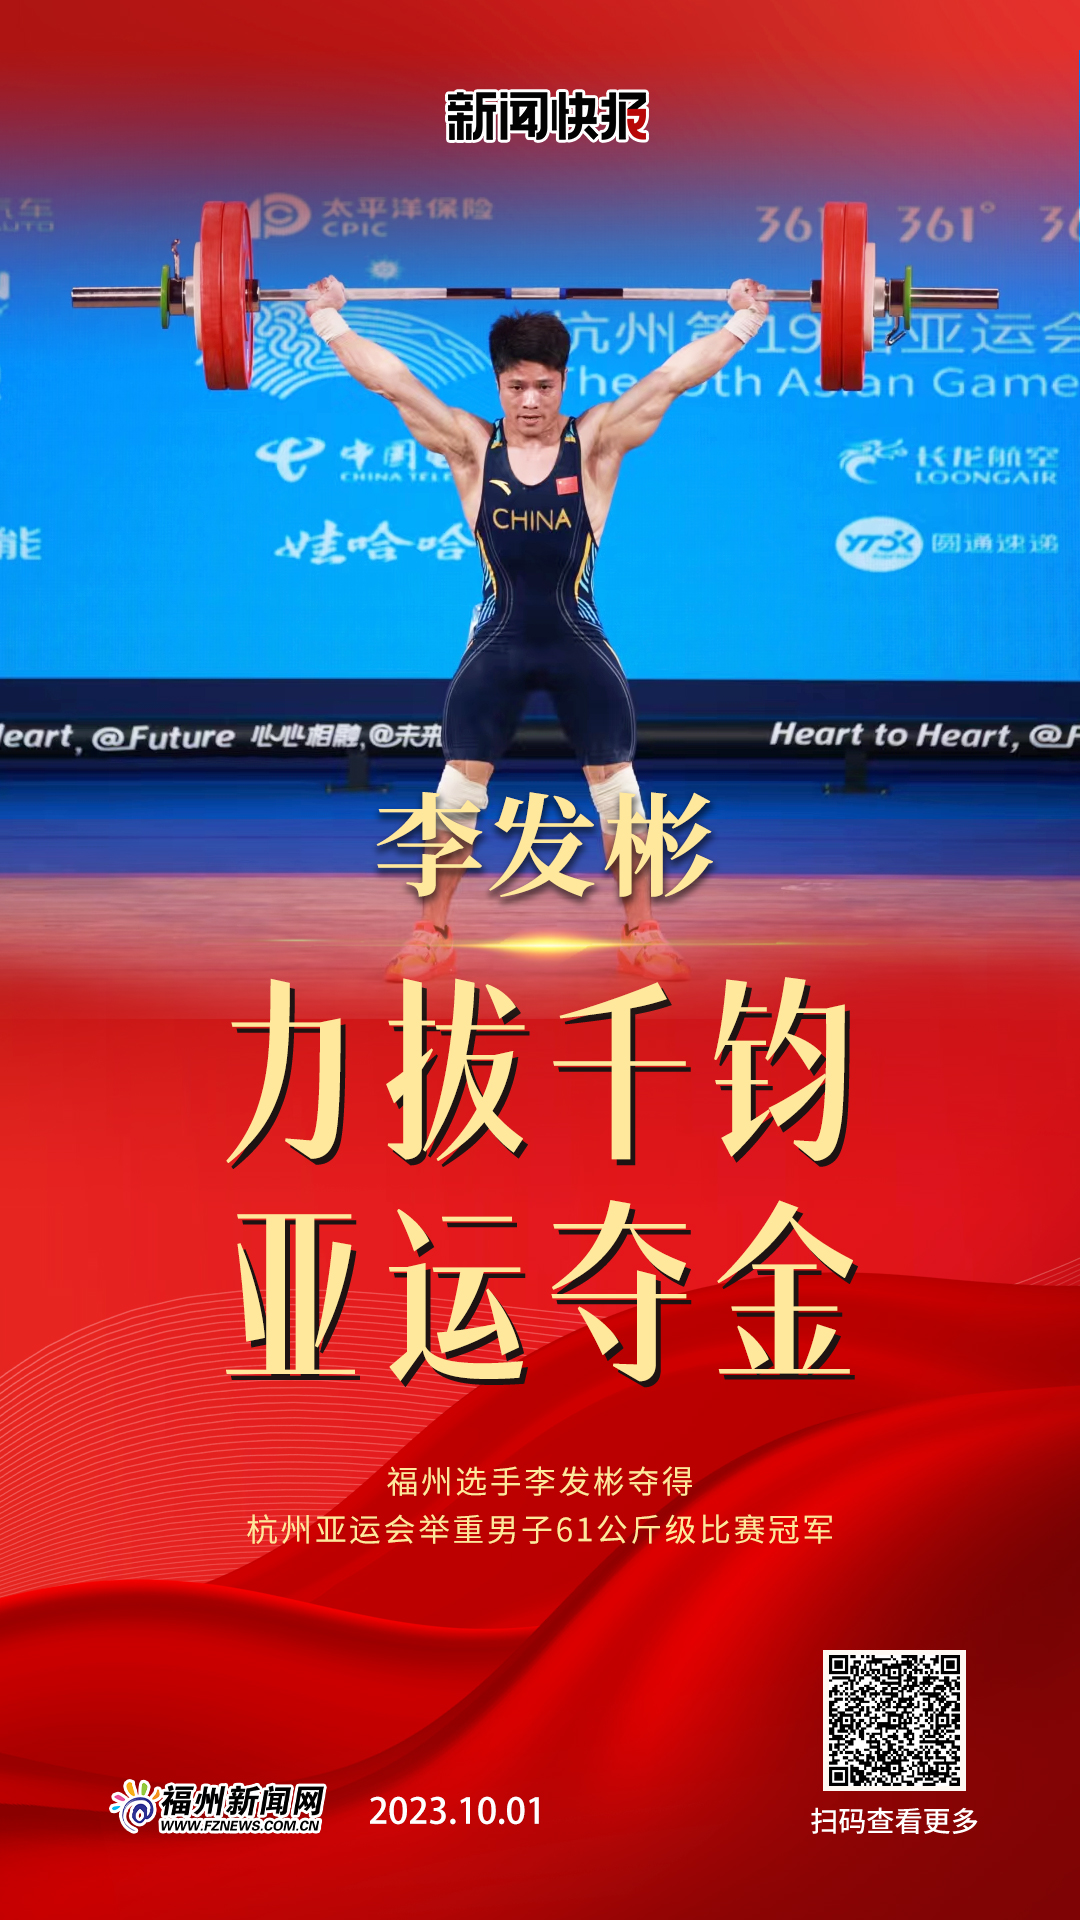 福州选手李发彬夺得杭州亚运会举重男子61公斤级比赛冠军